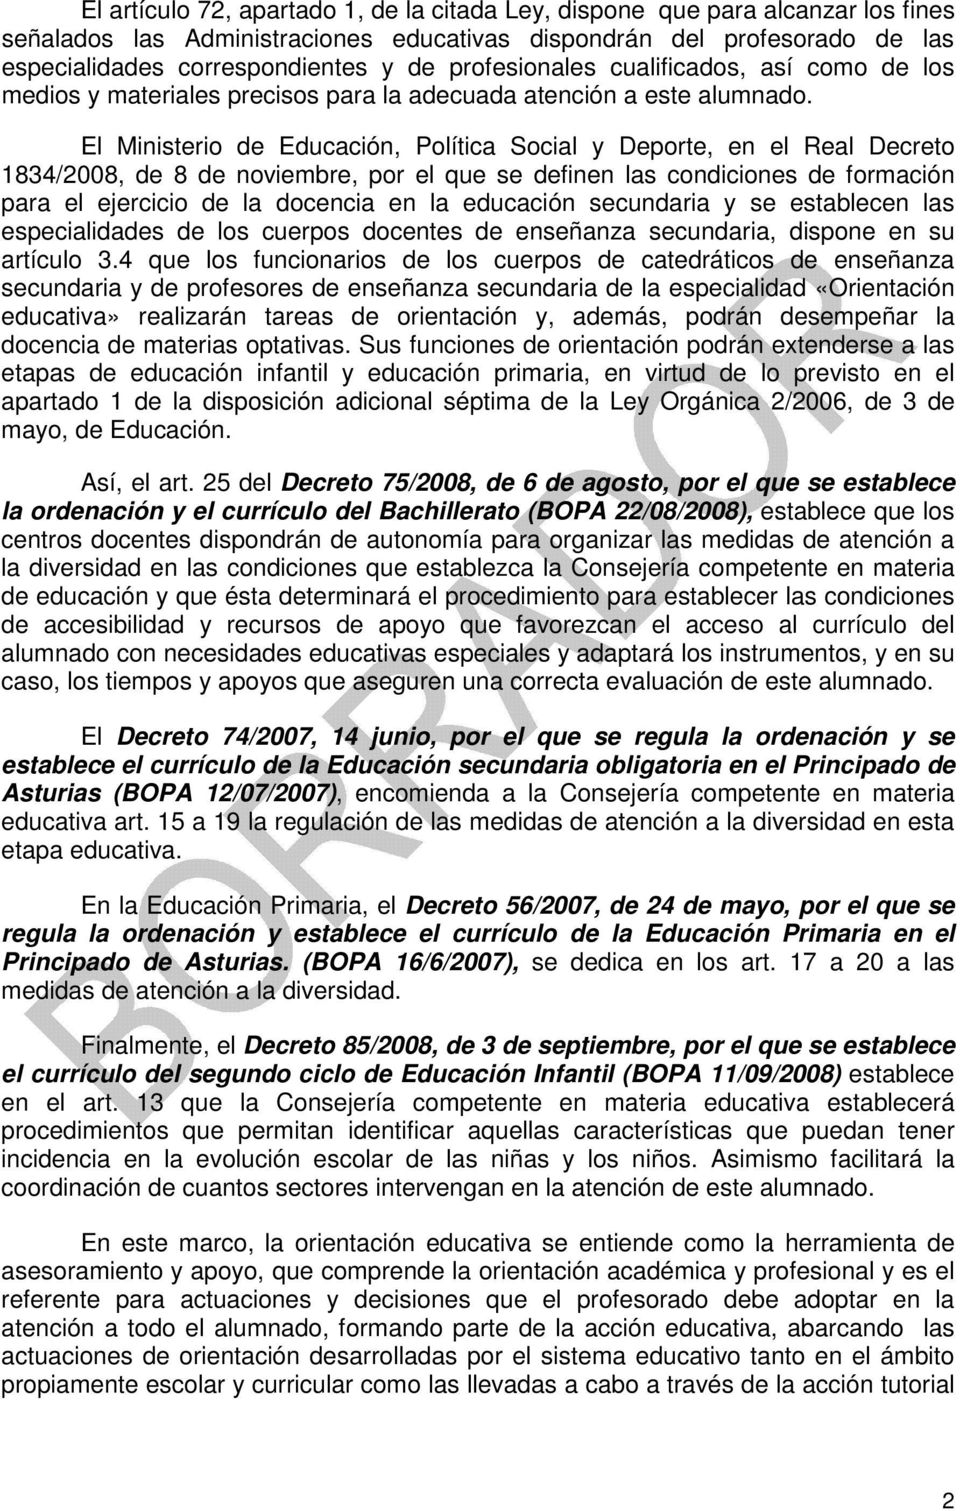 El Ministerio de Educación, Política Social y Deporte, en el Real Decreto 1834/2008, de 8 de noviembre, por el que se definen las condiciones de formación para el ejercicio de la docencia en la